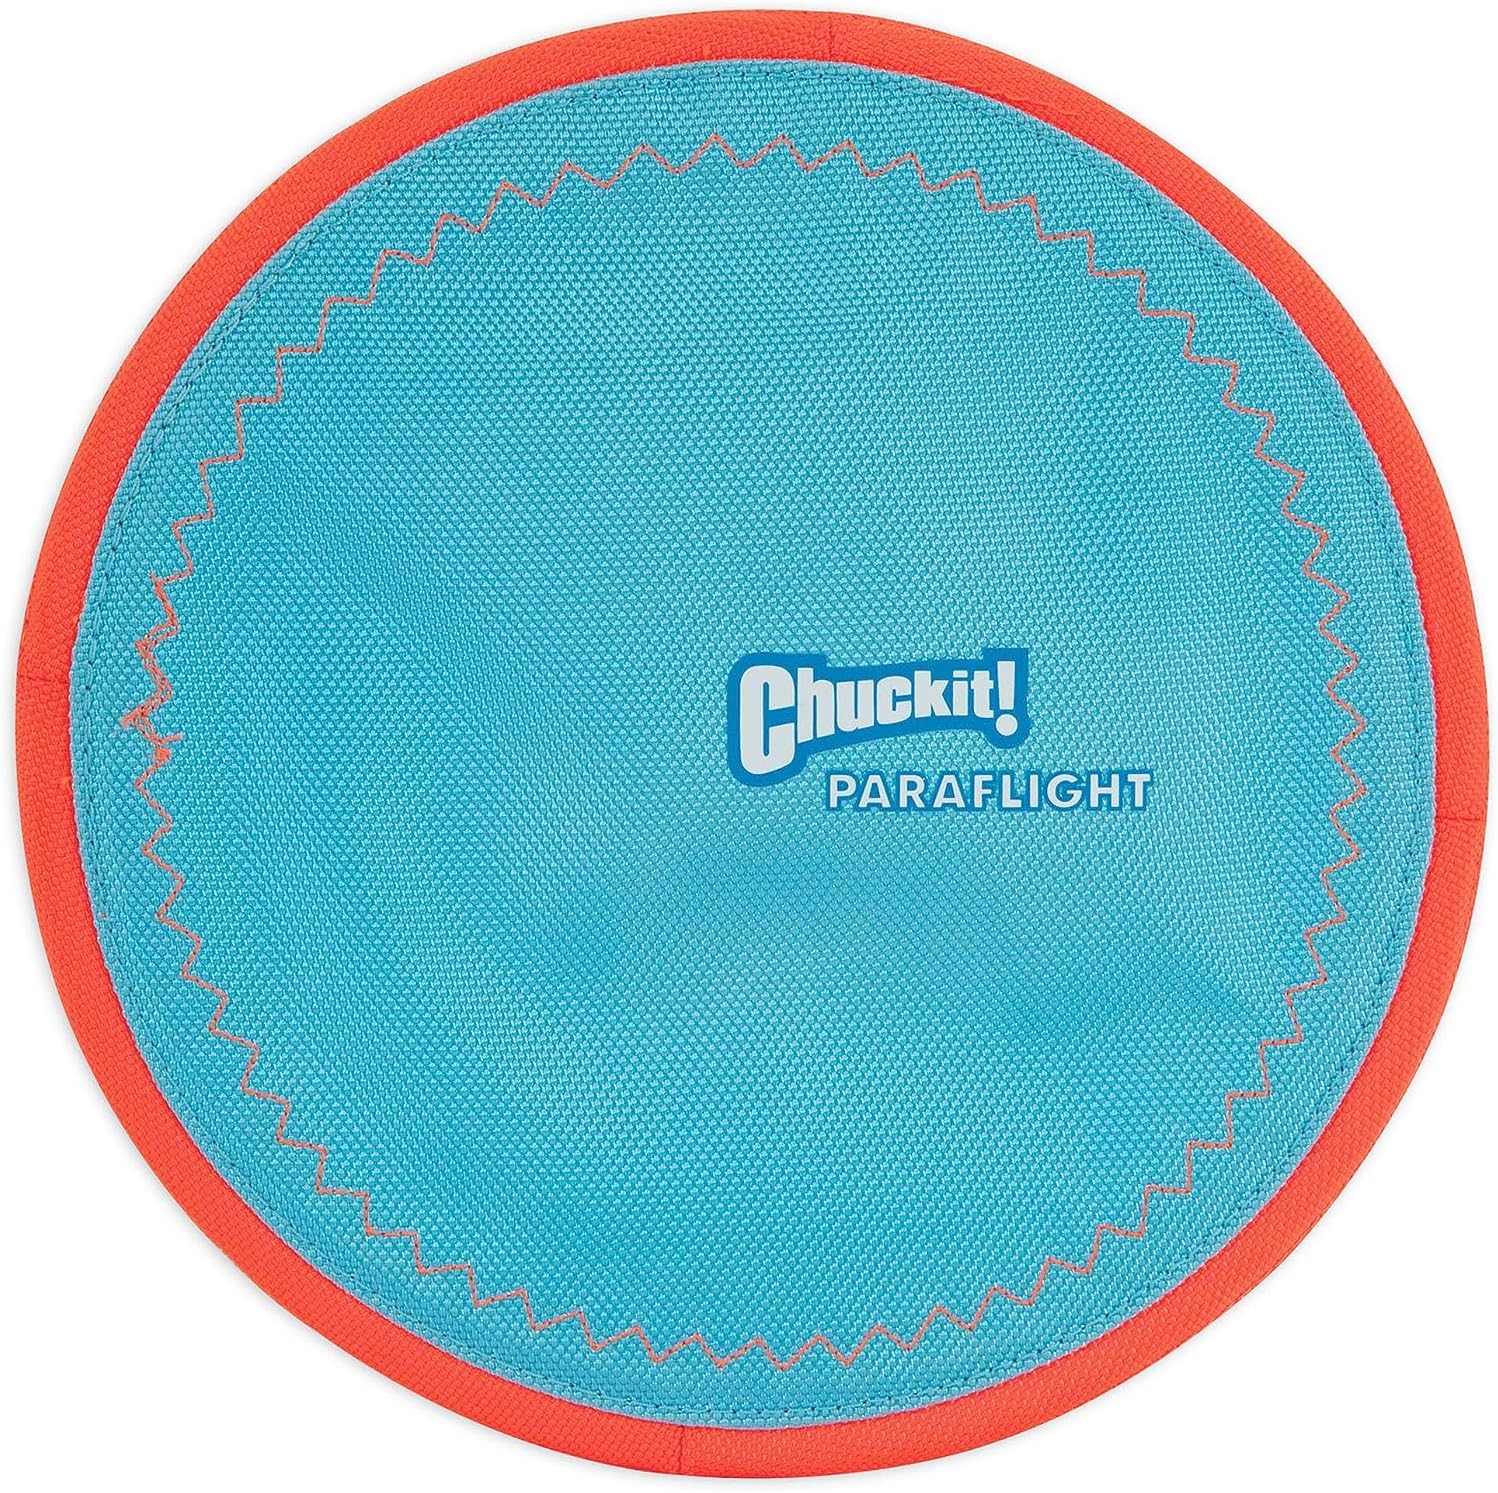 ChuckIt! Paraflight Flying Disc Dog Frisbee Toy, Large (9.75"), Blue $4.44 @ Amazon